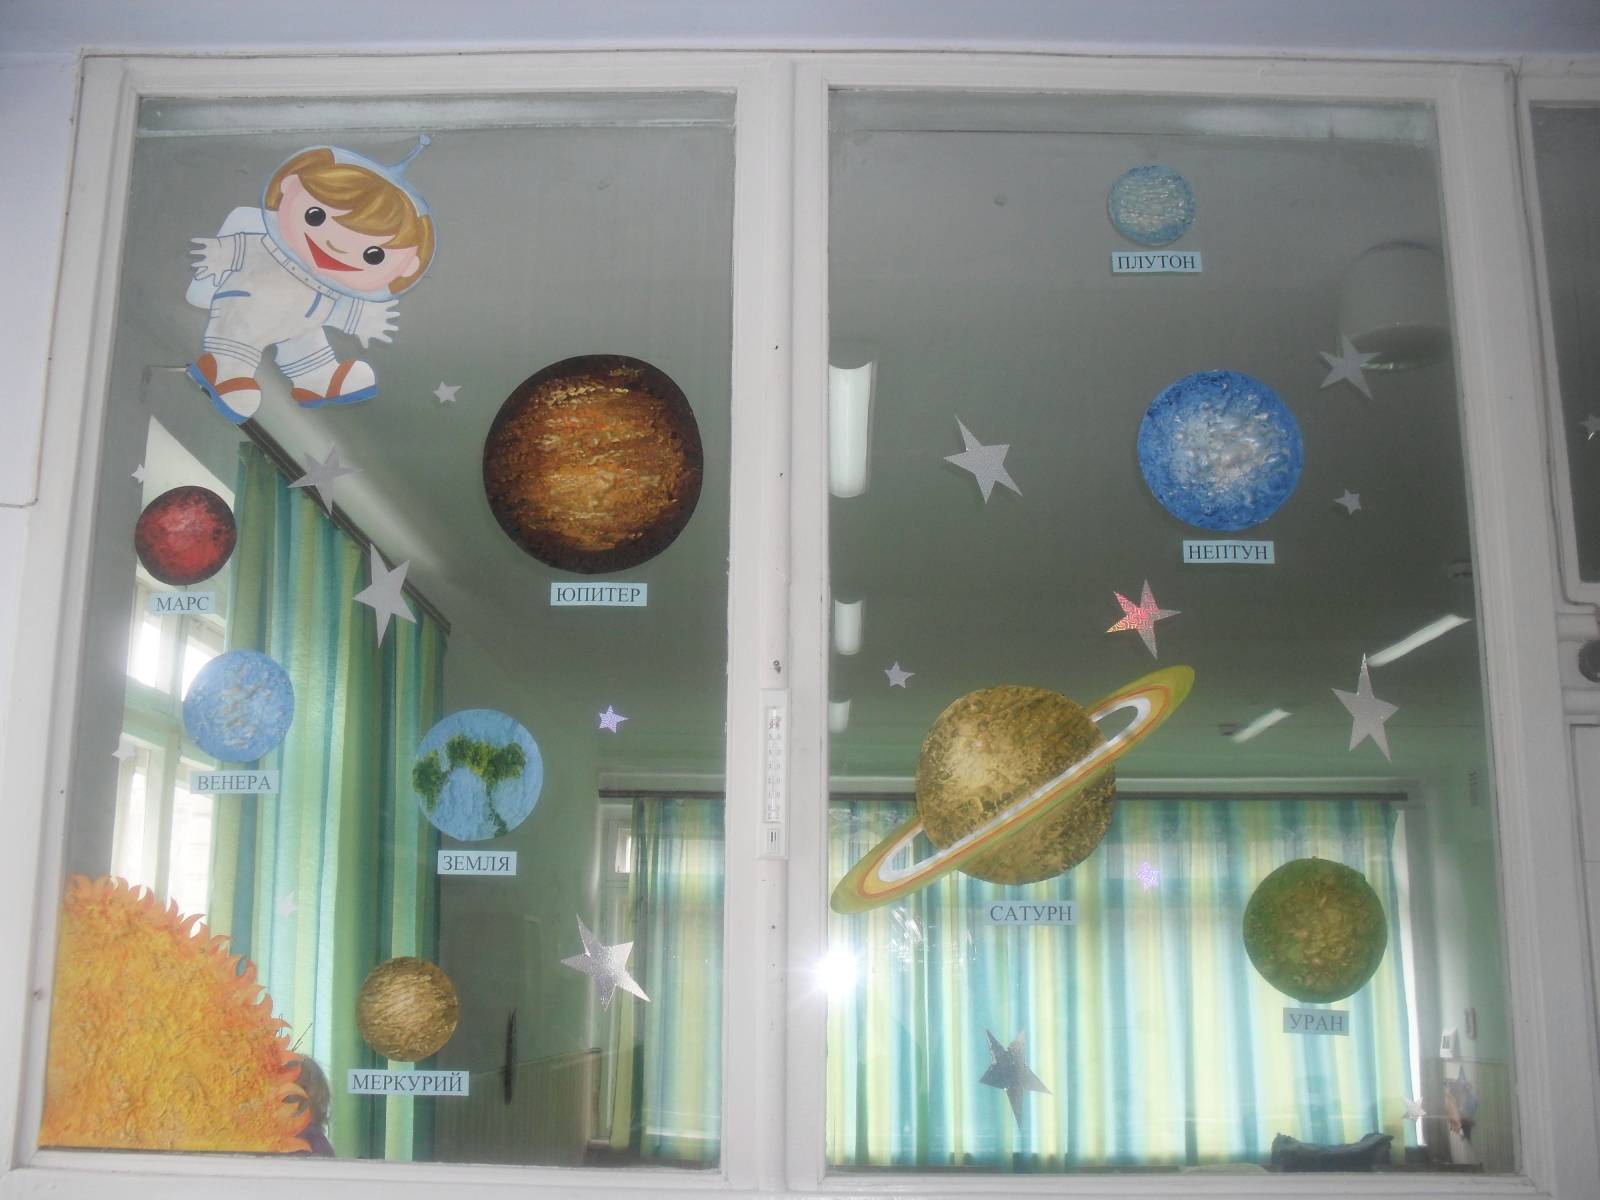 оформление зала на день космонавтики в детском саду